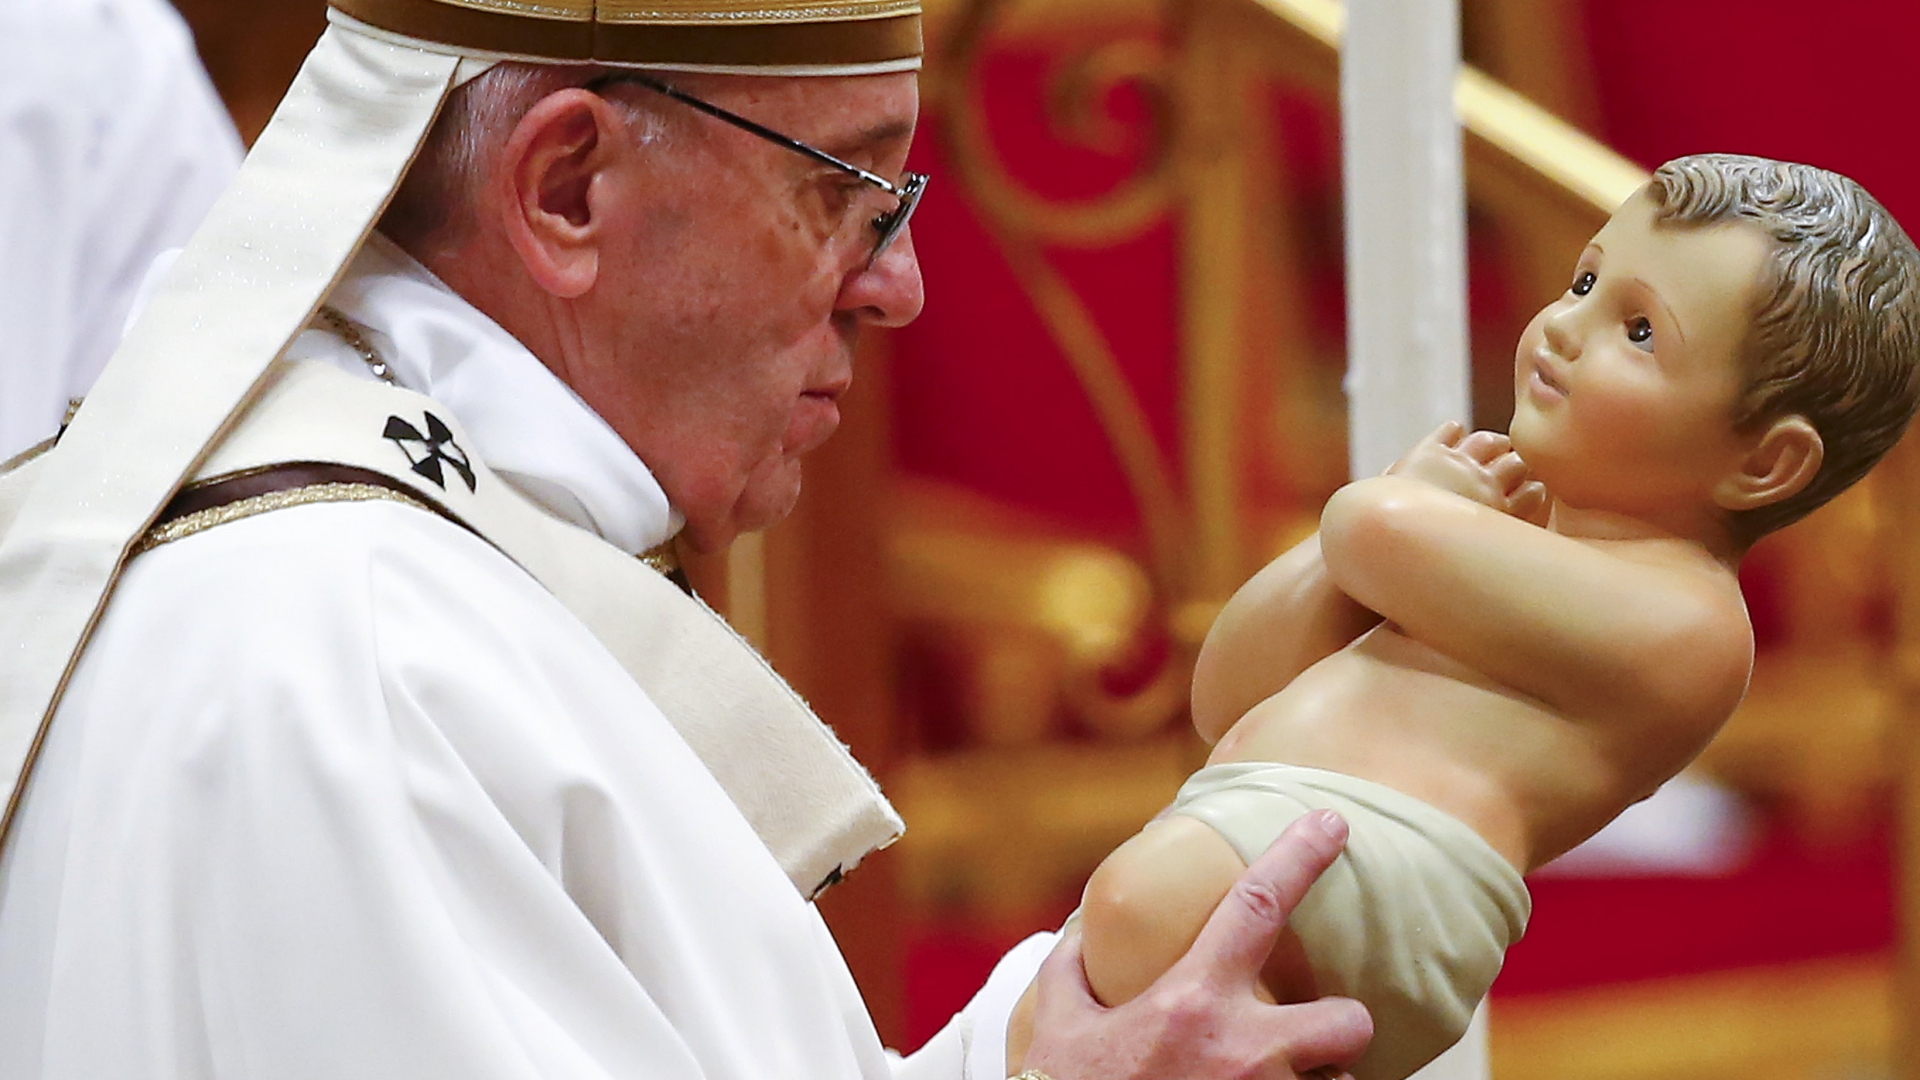 Papst Franziskus hält während der Christmette eine Figur in der Hand, die das Christuskind darstellen soll.  | REUTERS